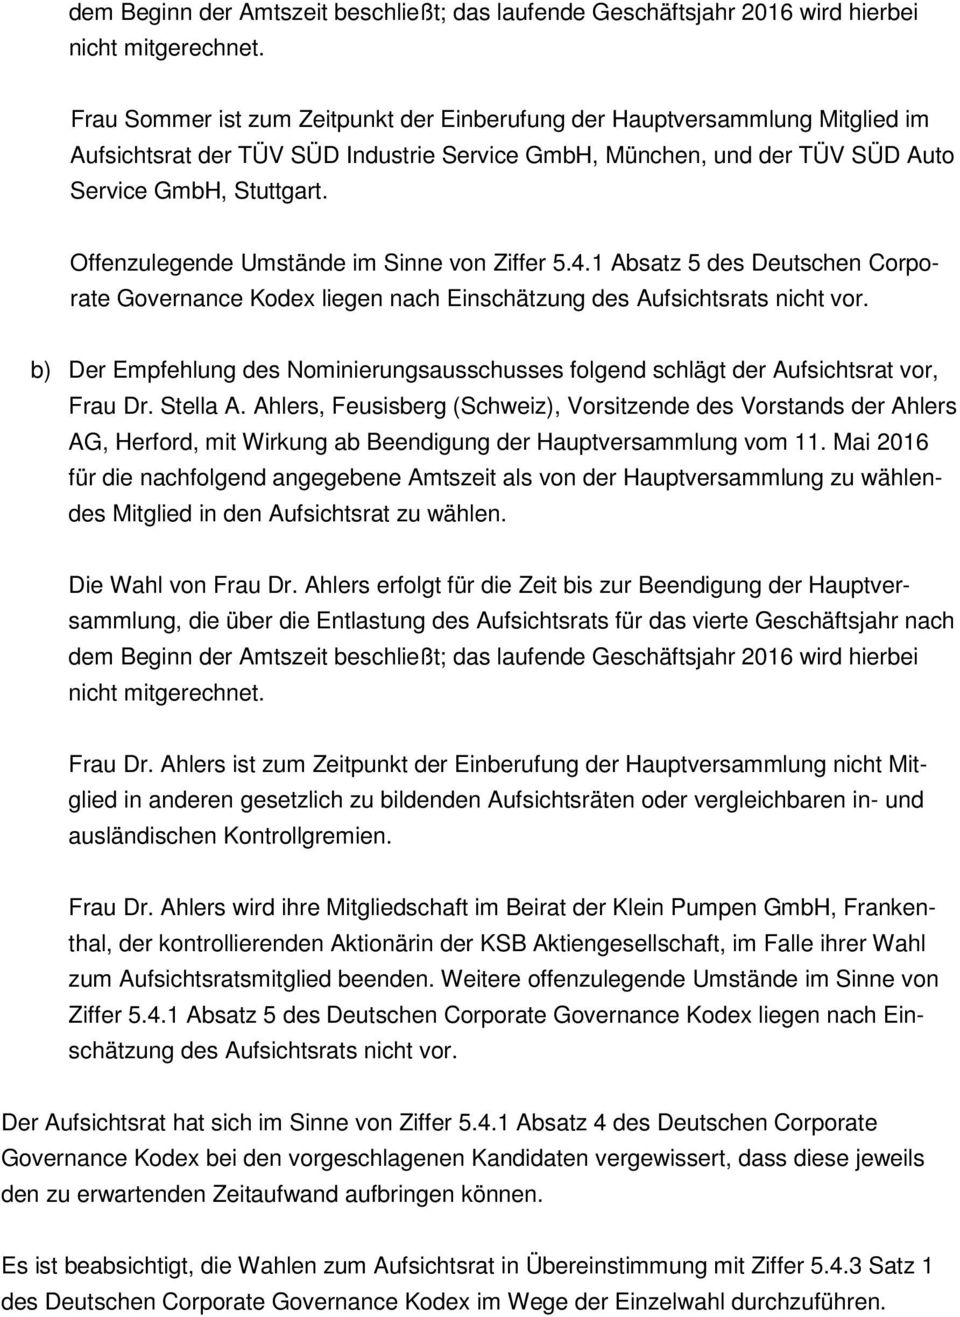 Offenzulegende Umstände im Sinne von Ziffer 5.4.1 Absatz 5 des Deutschen Corporate Governance Kodex liegen nach Einschätzung des Aufsichtsrats nicht vor.